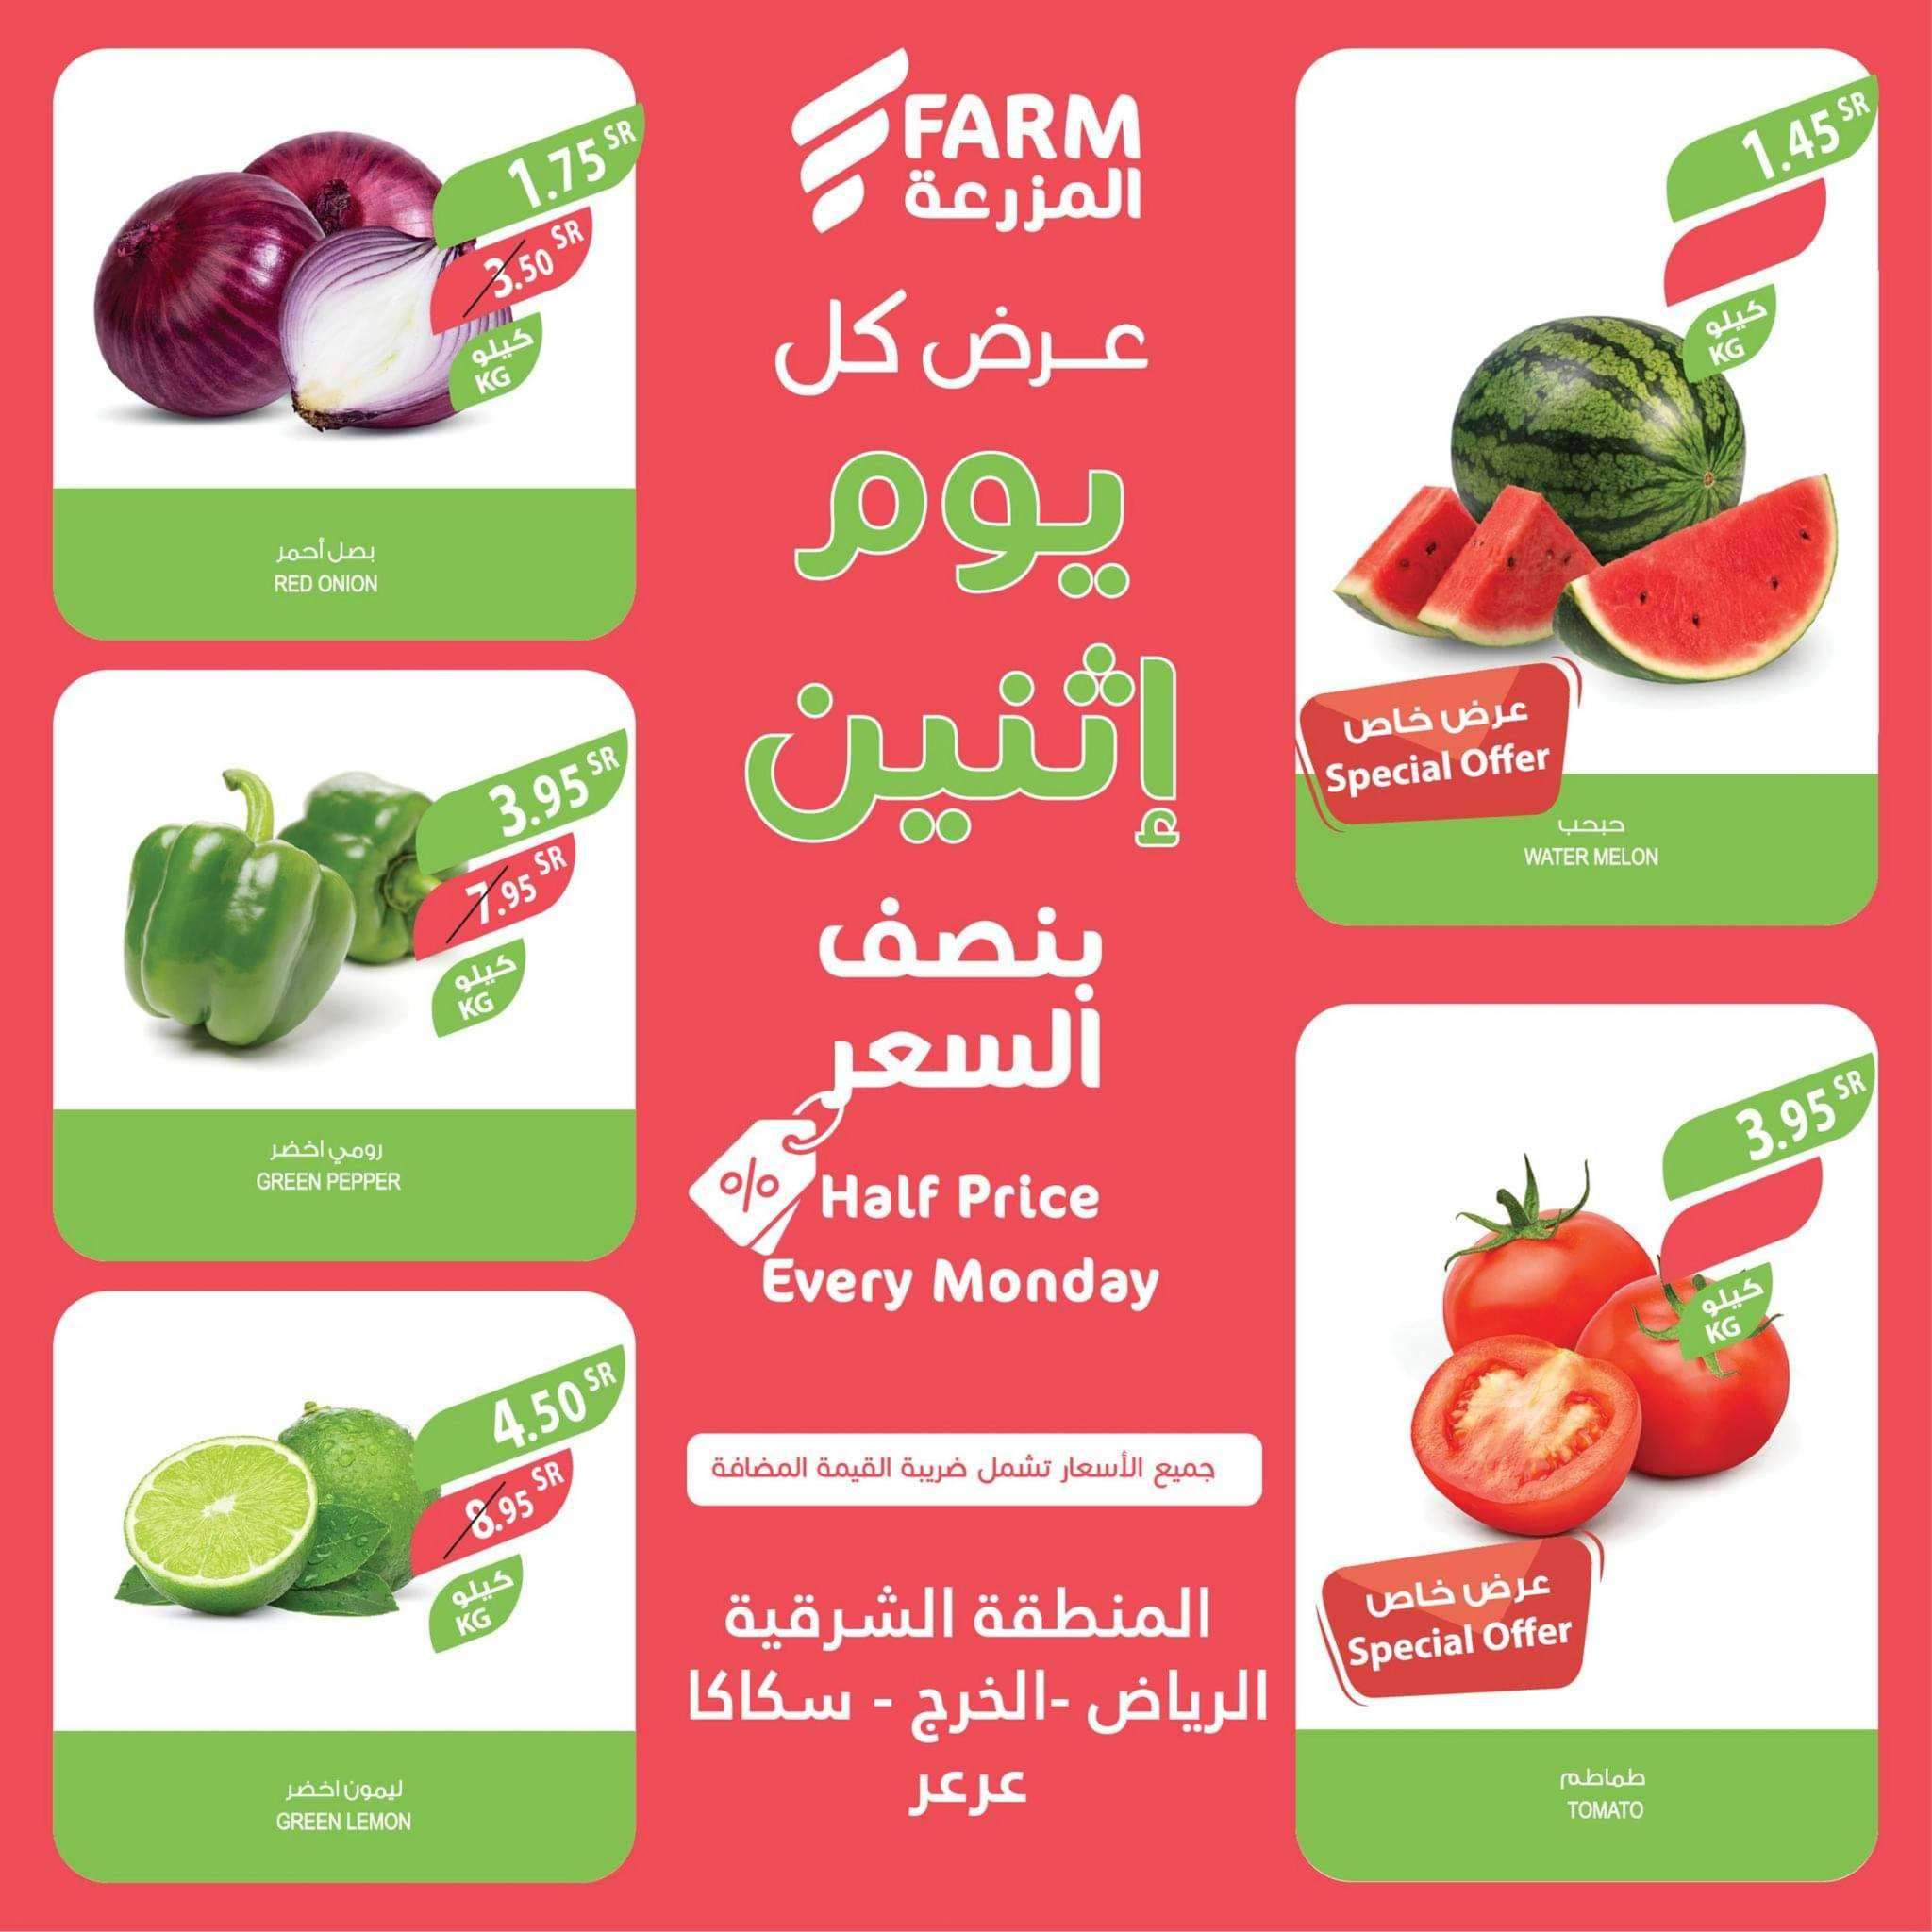 - عروض المزرعة الرياض و المنطقة الشرقية الطازج الاثنين 3-7-2023 اليوم فقط